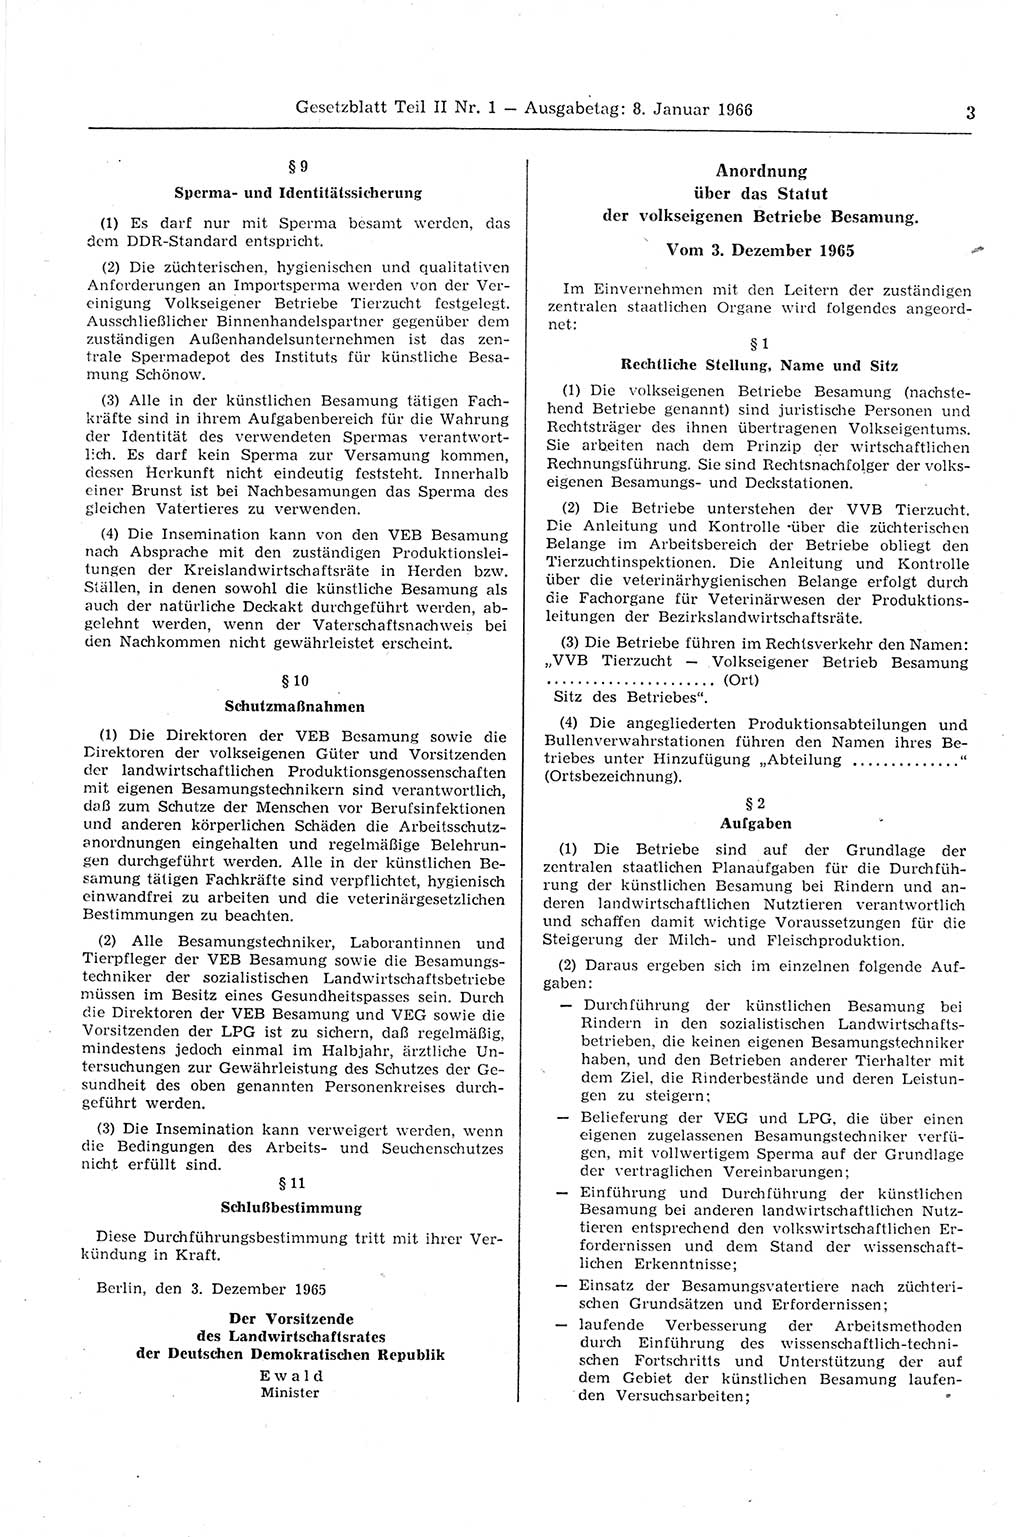 Gesetzblatt (GBl.) der Deutschen Demokratischen Republik (DDR) Teil ⅠⅠ 1966, Seite 3 (GBl. DDR ⅠⅠ 1966, S. 3)